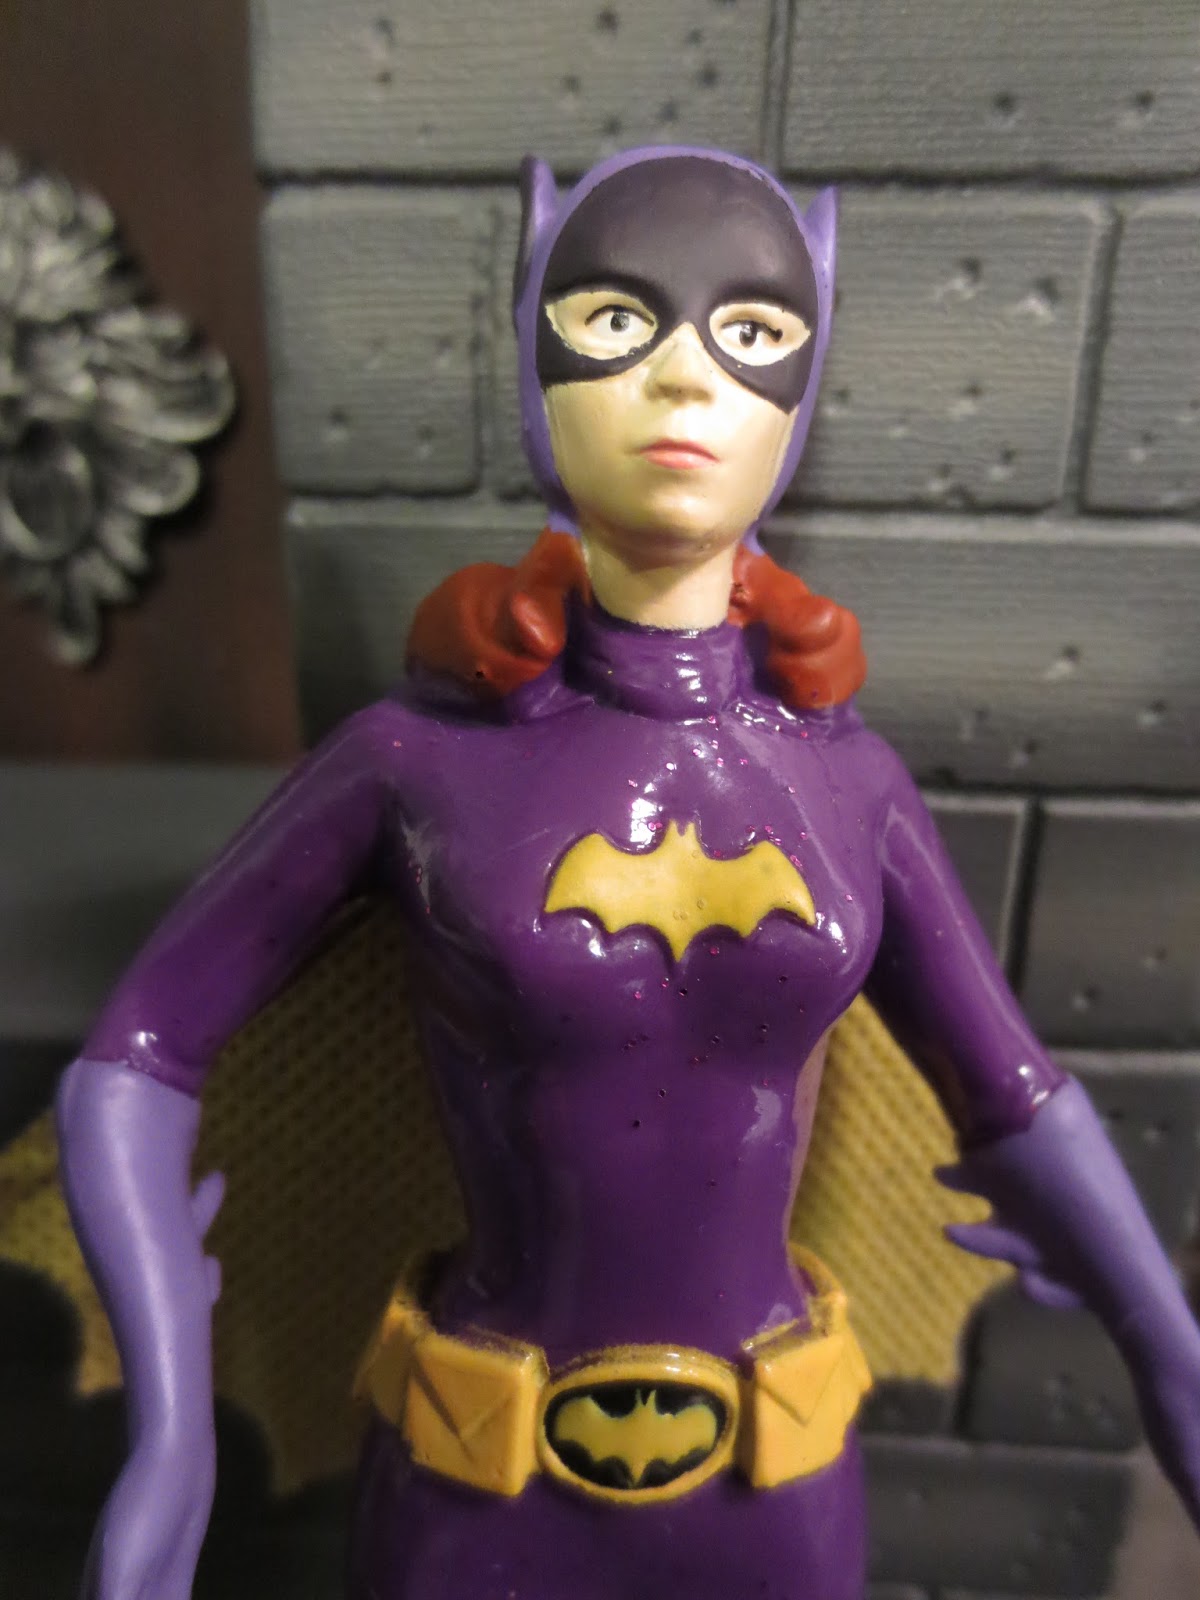 B11 DC Super heroes BatGirl 60's Batman Costume Yvonne Craig TV show figure 